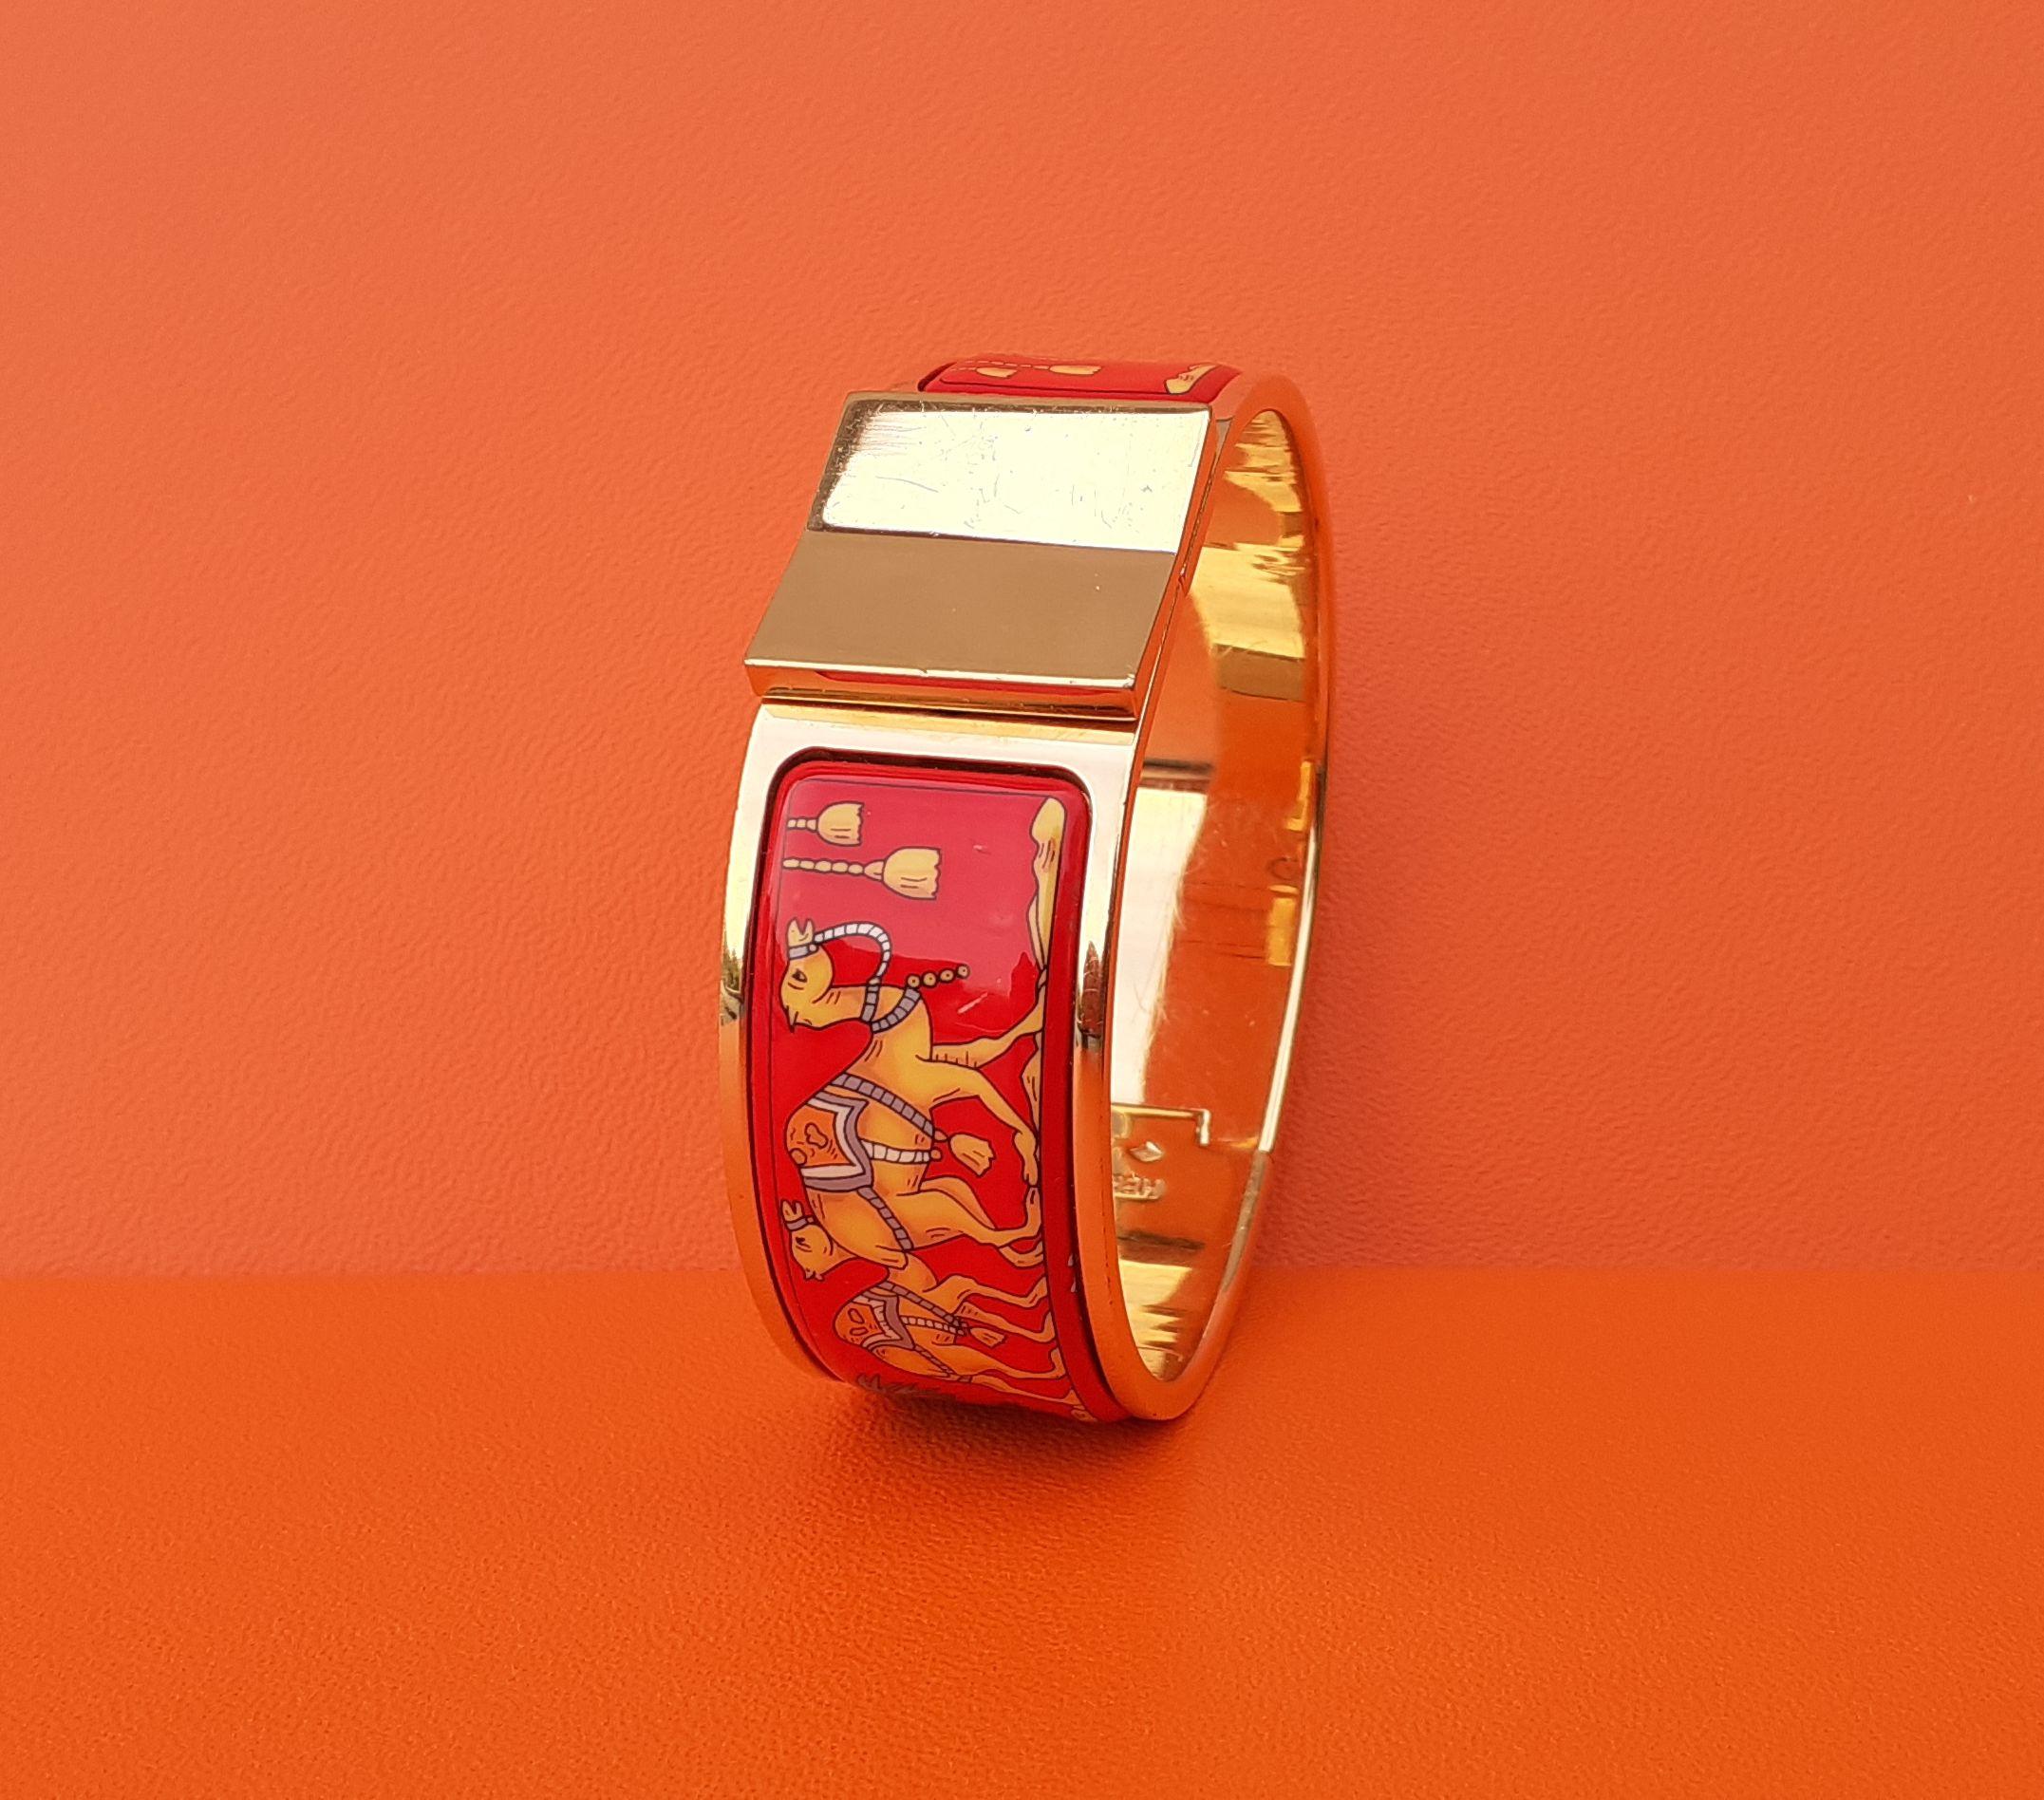 Seltenes und wunderschönes authentisches Hermès-Armband

